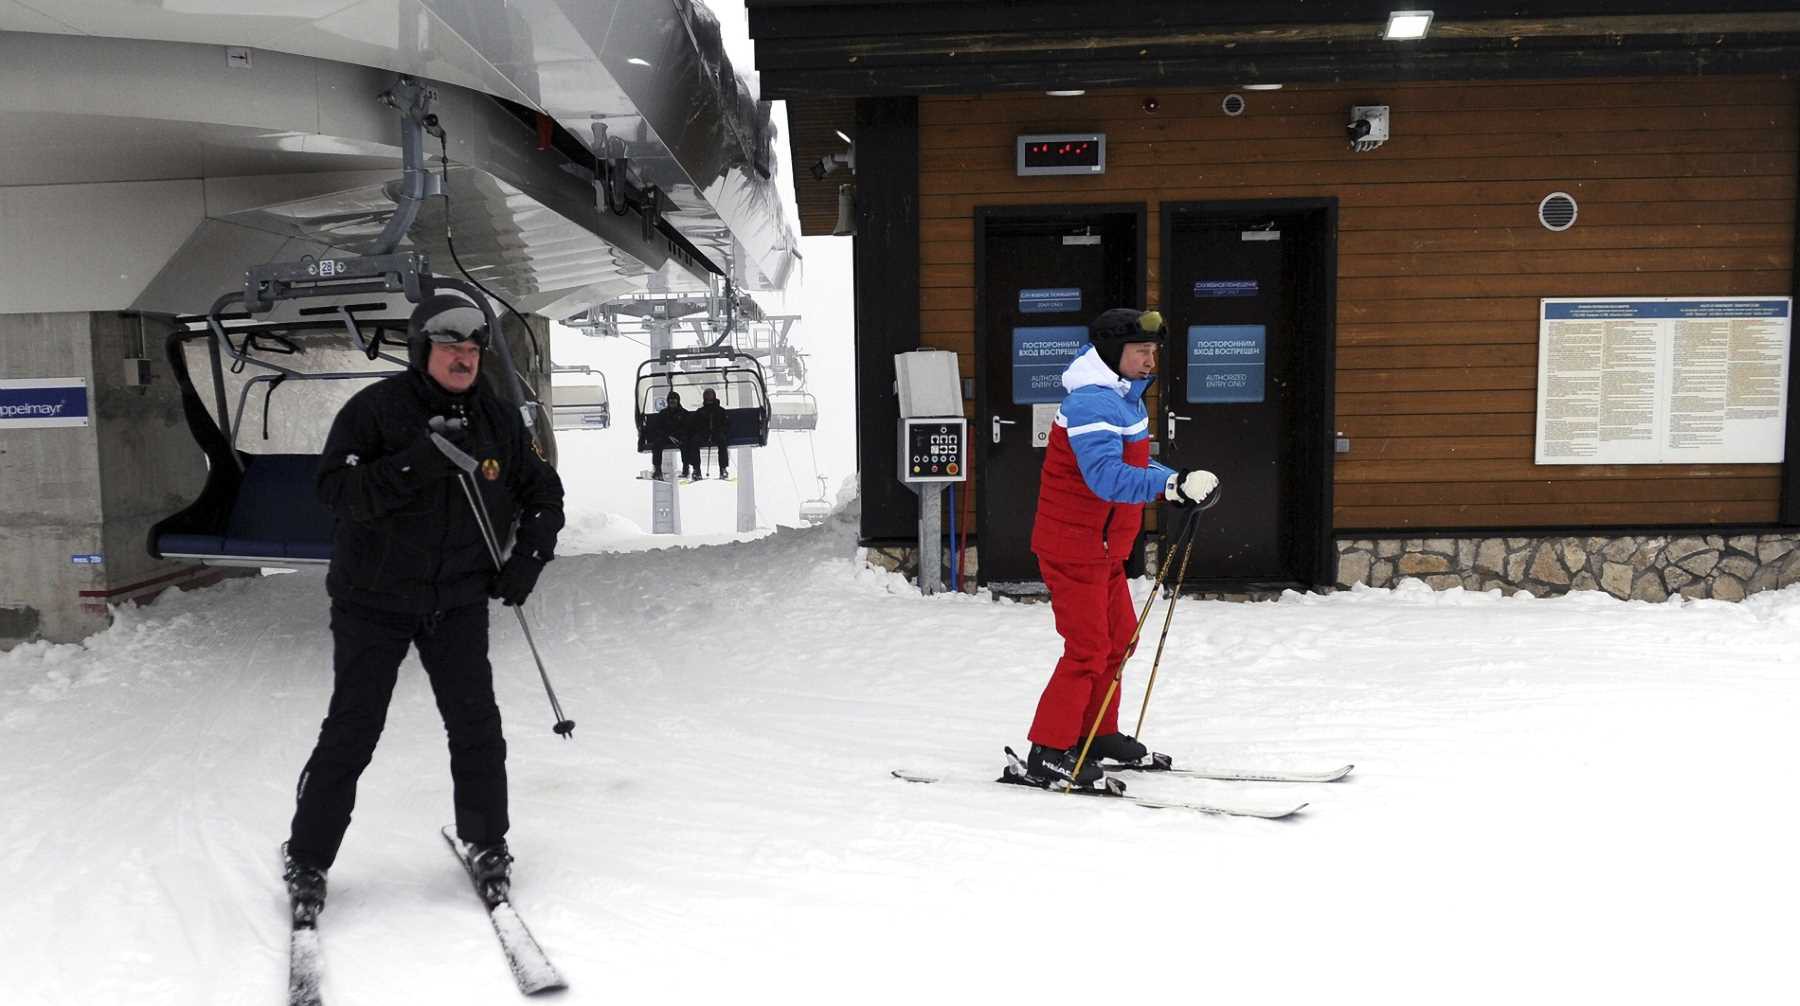 Dailystorm - Лыжи против снегоходов: Путин и Лукашенко по очереди обогнали друг друга